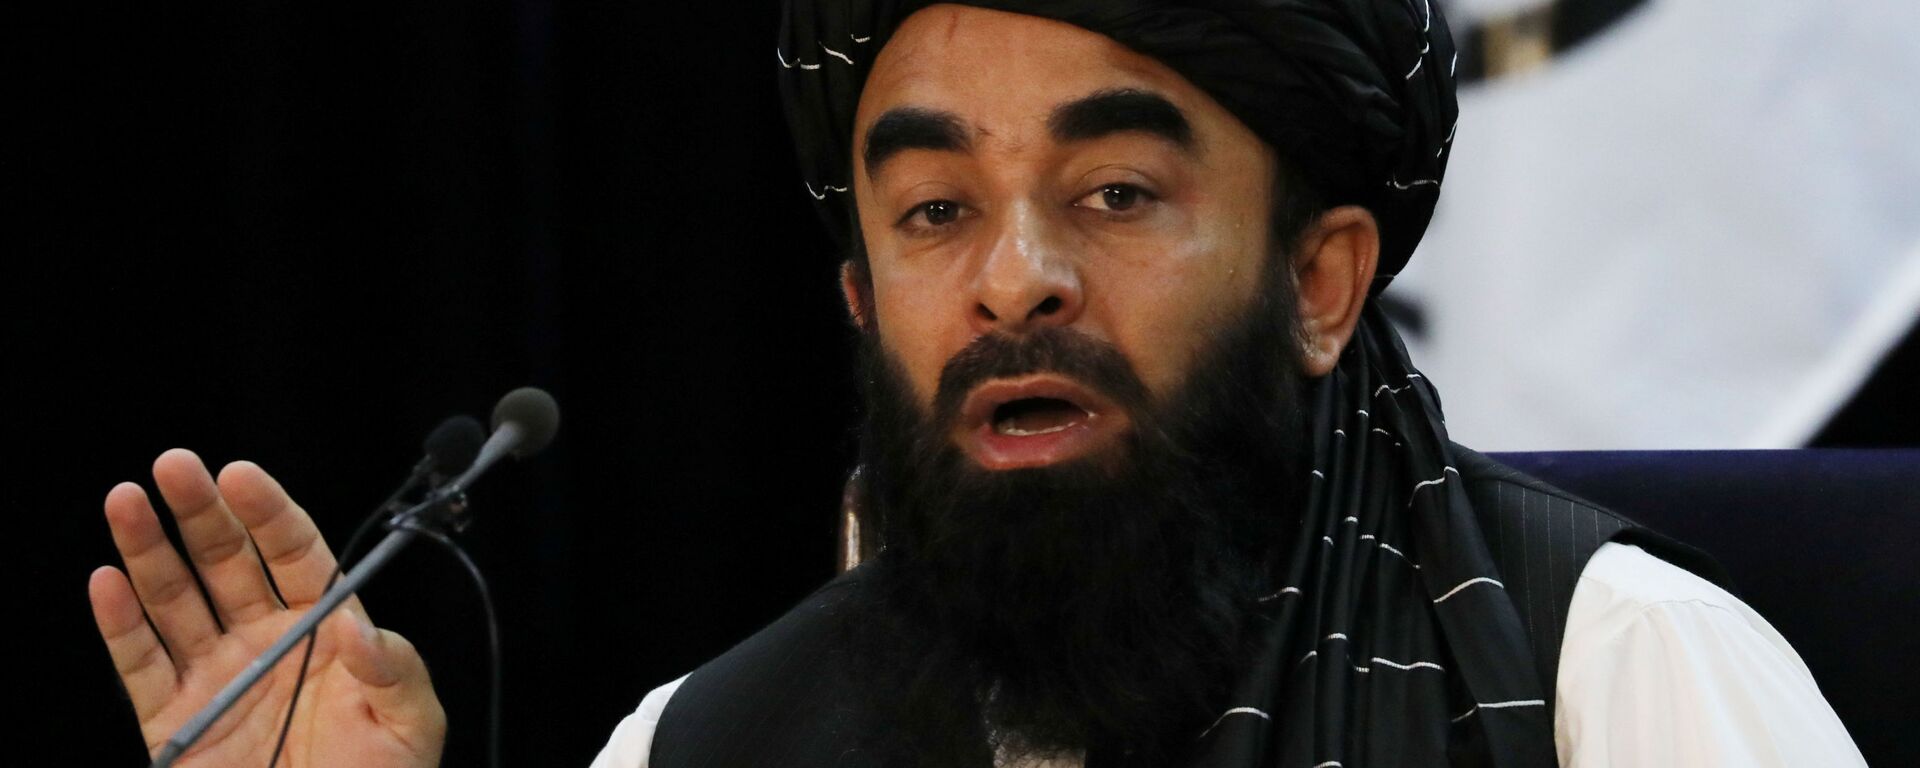 ممثل حركة طالبان (المحظورة في روسيا) ذبيح الله مجاهد في كابول، أفغانستان 6 سبتمبر 2021 - سبوتنيك عربي, 1920, 21.09.2021